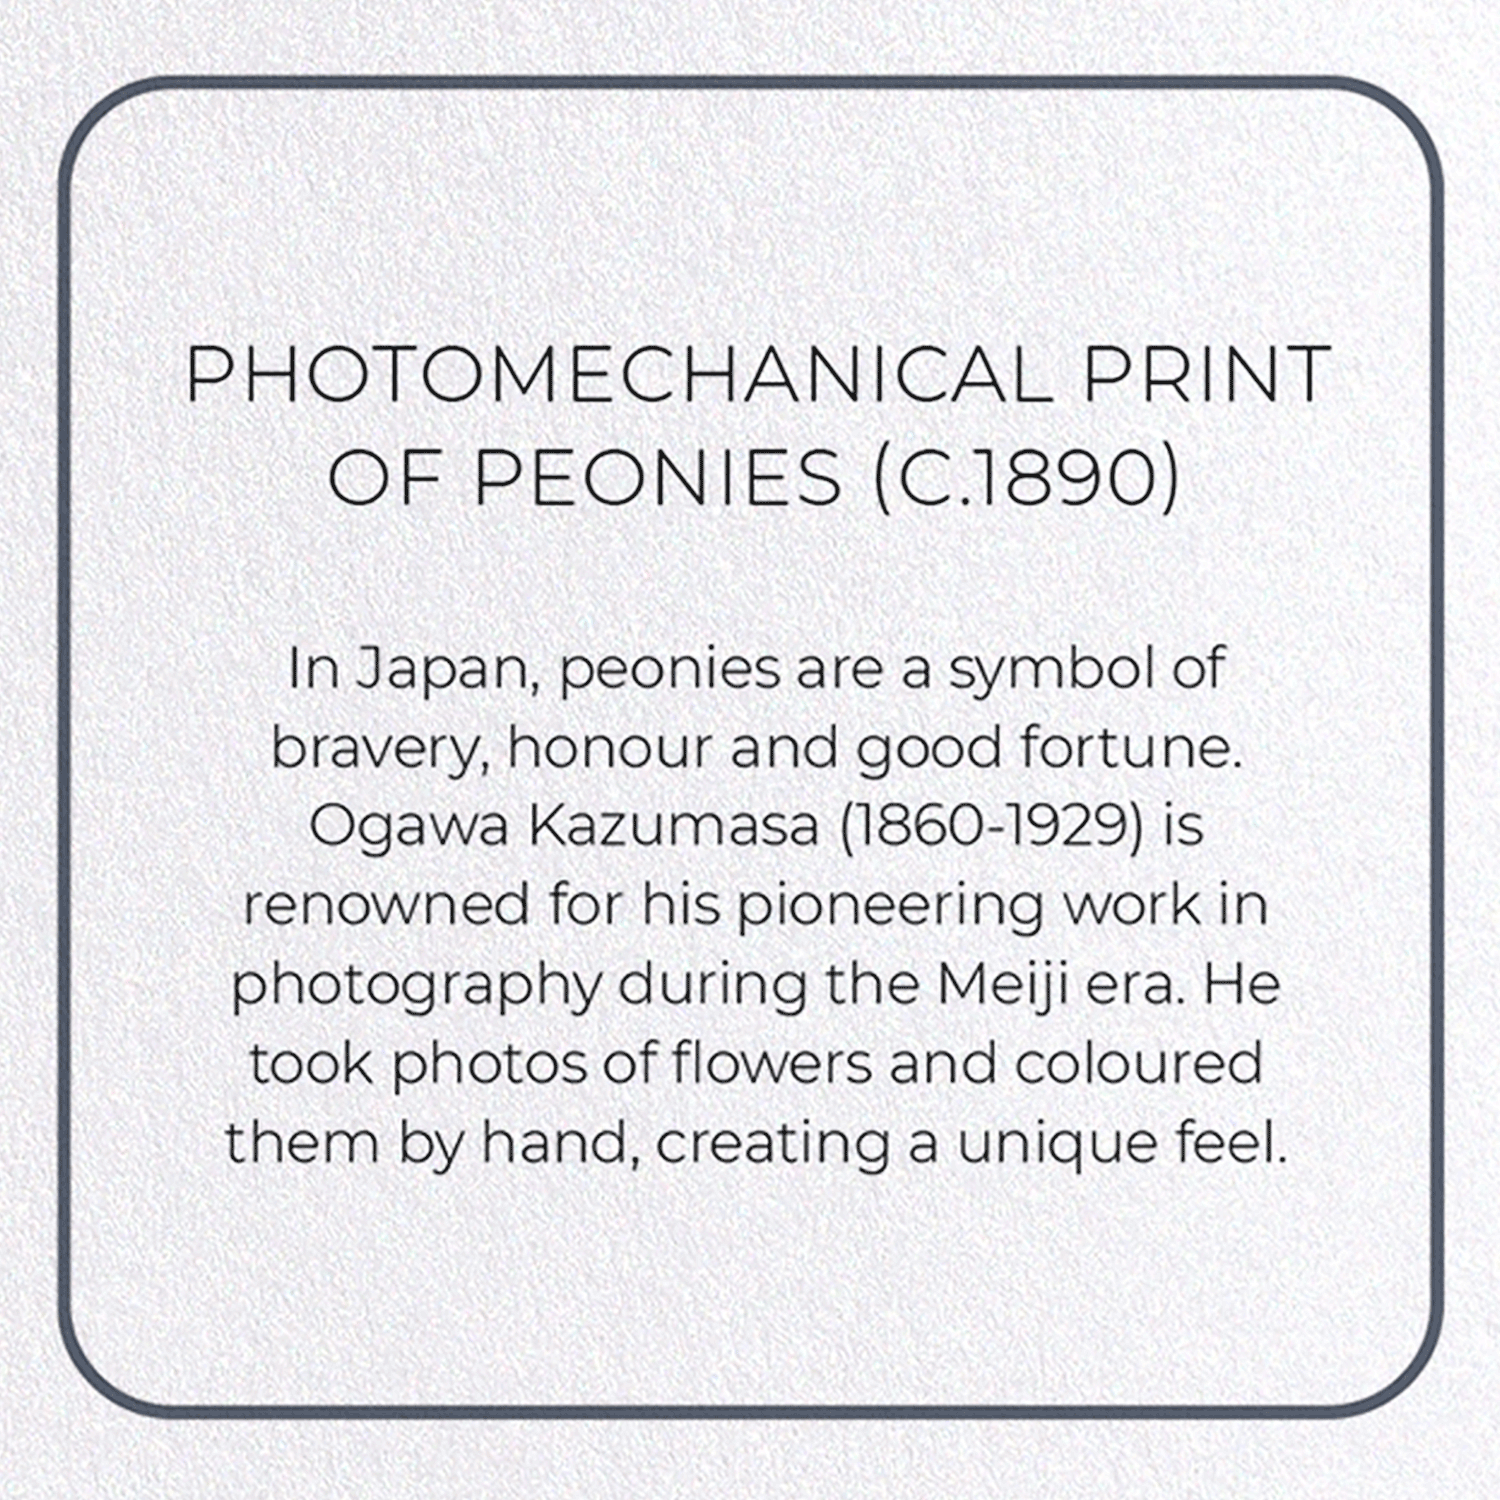 PHOTOMECHANICAL PRINT OF PEONIES (C.1890): Photo Greeting Card